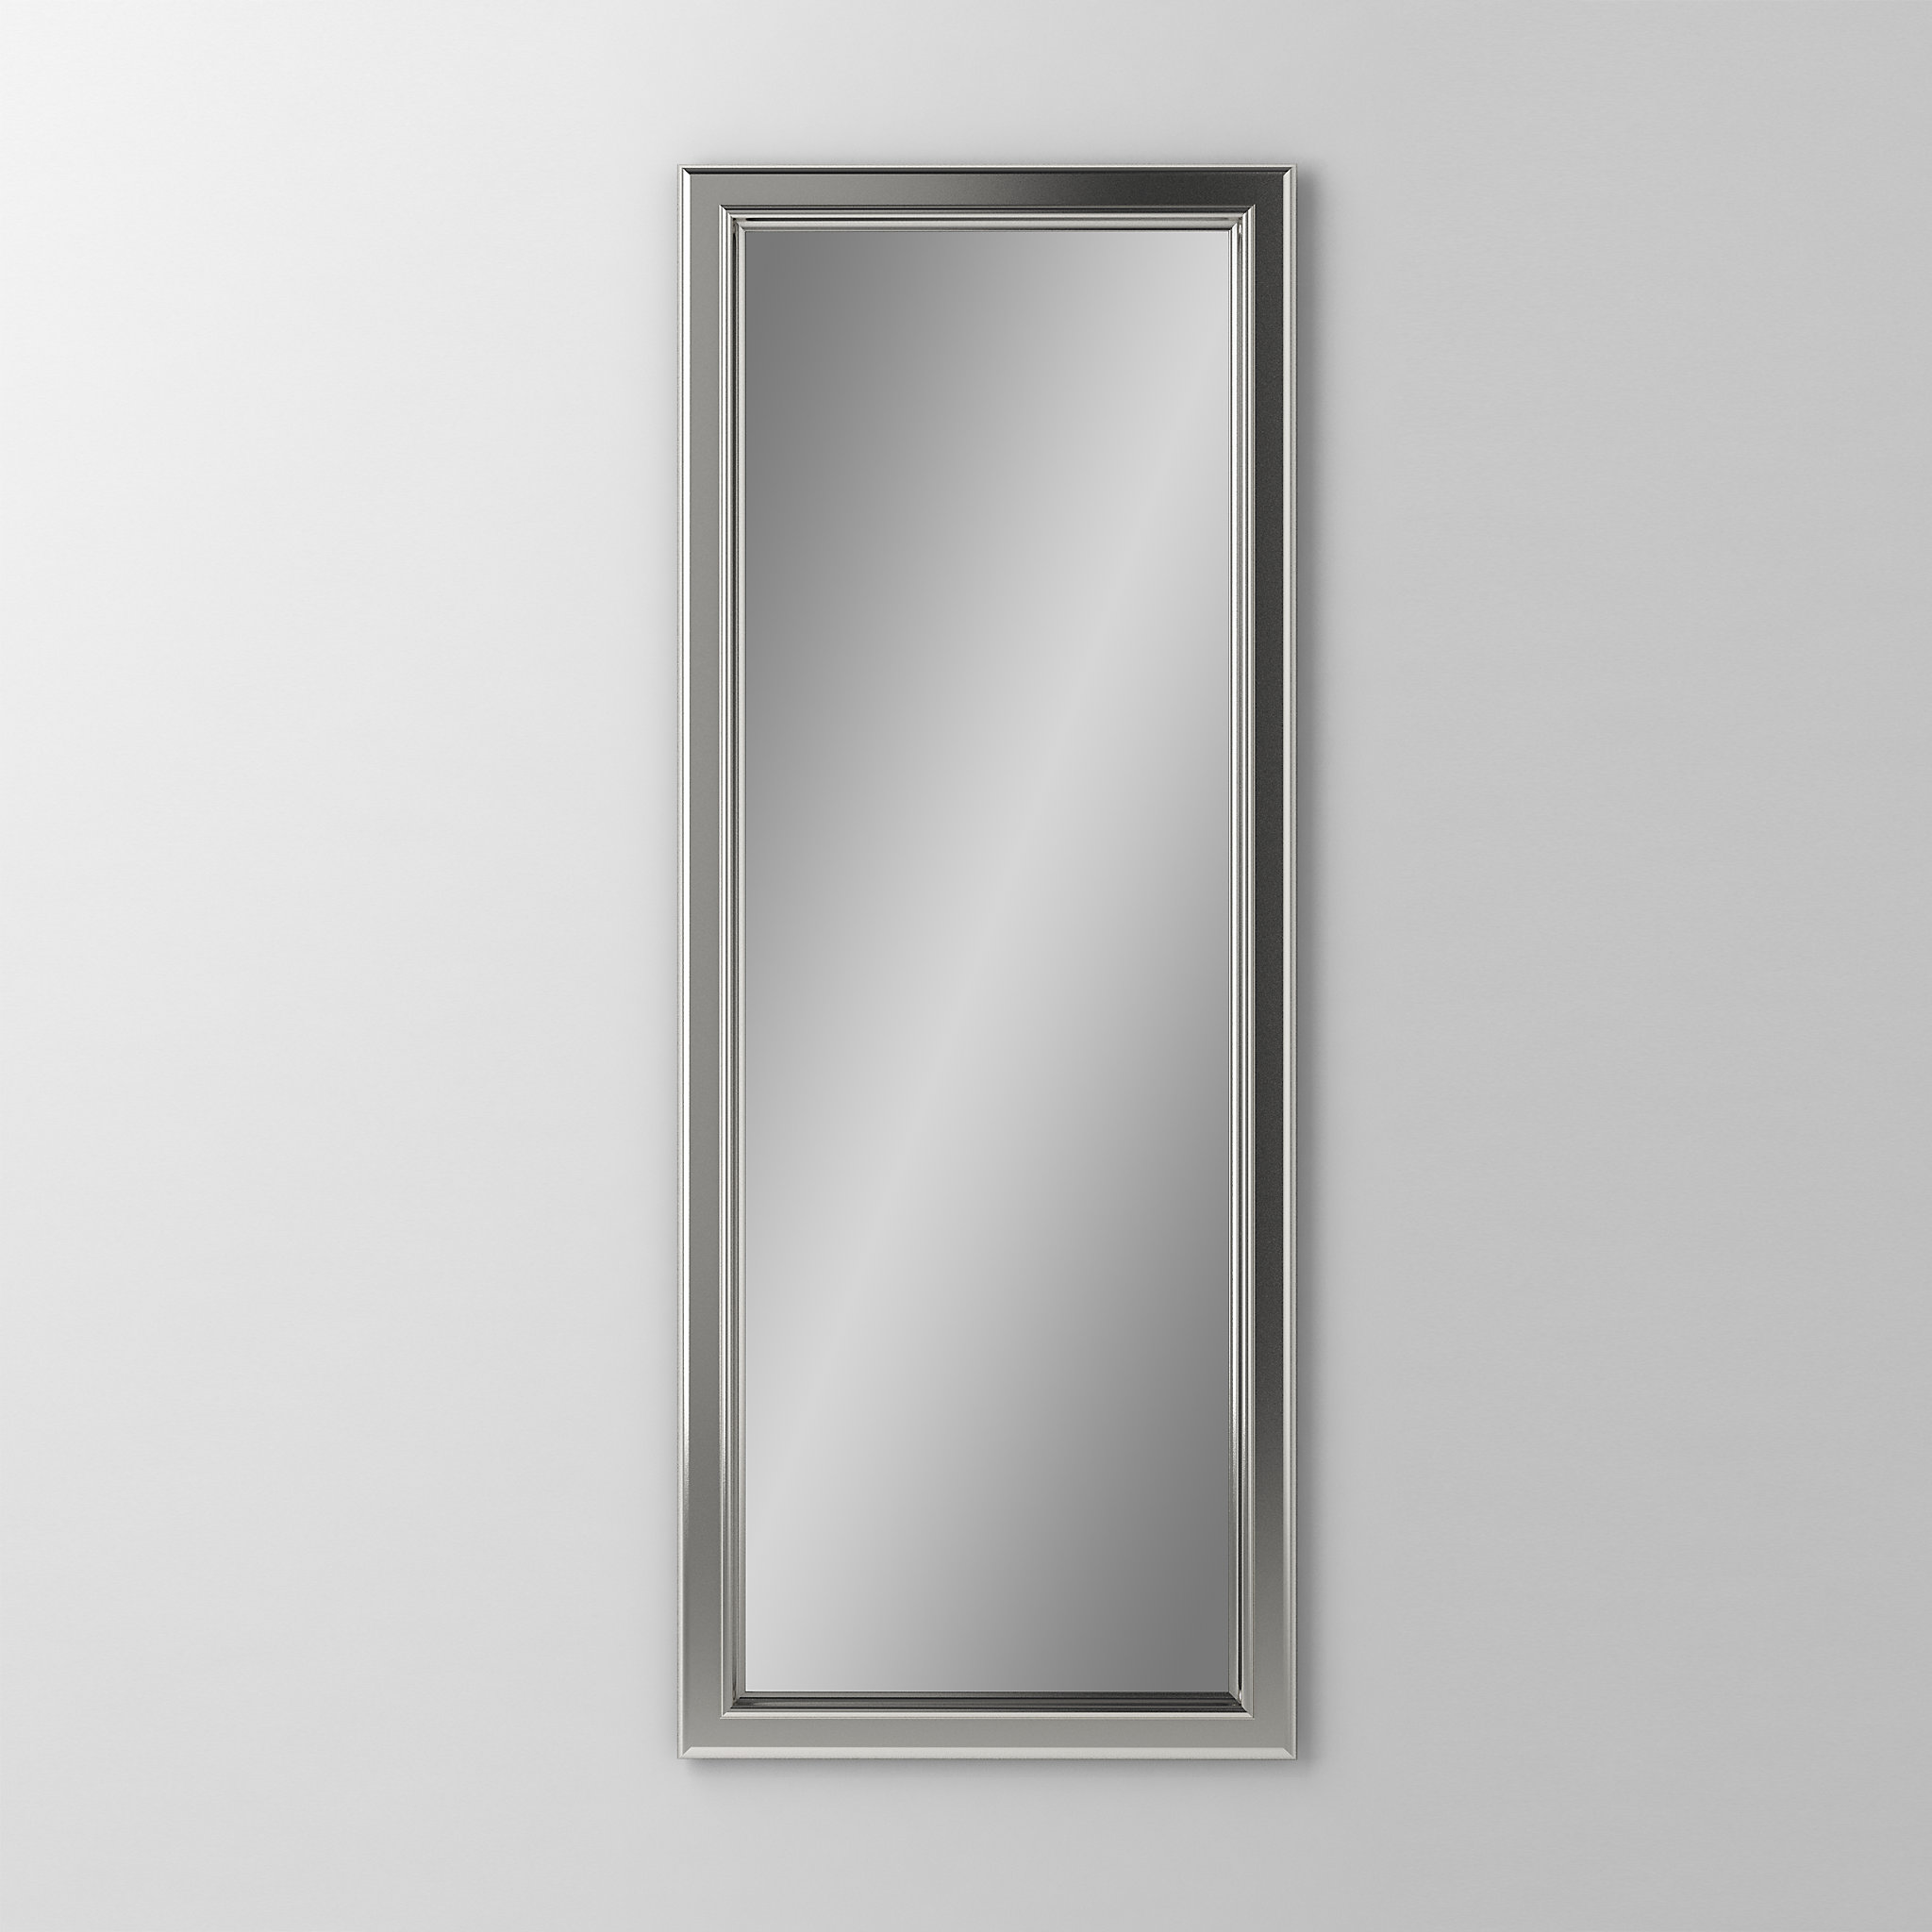 Robern DM1640BM70Main Line Mirror, 16" x 40" x 1-5/8", Bryn Mawr Frame, Satin Nickel